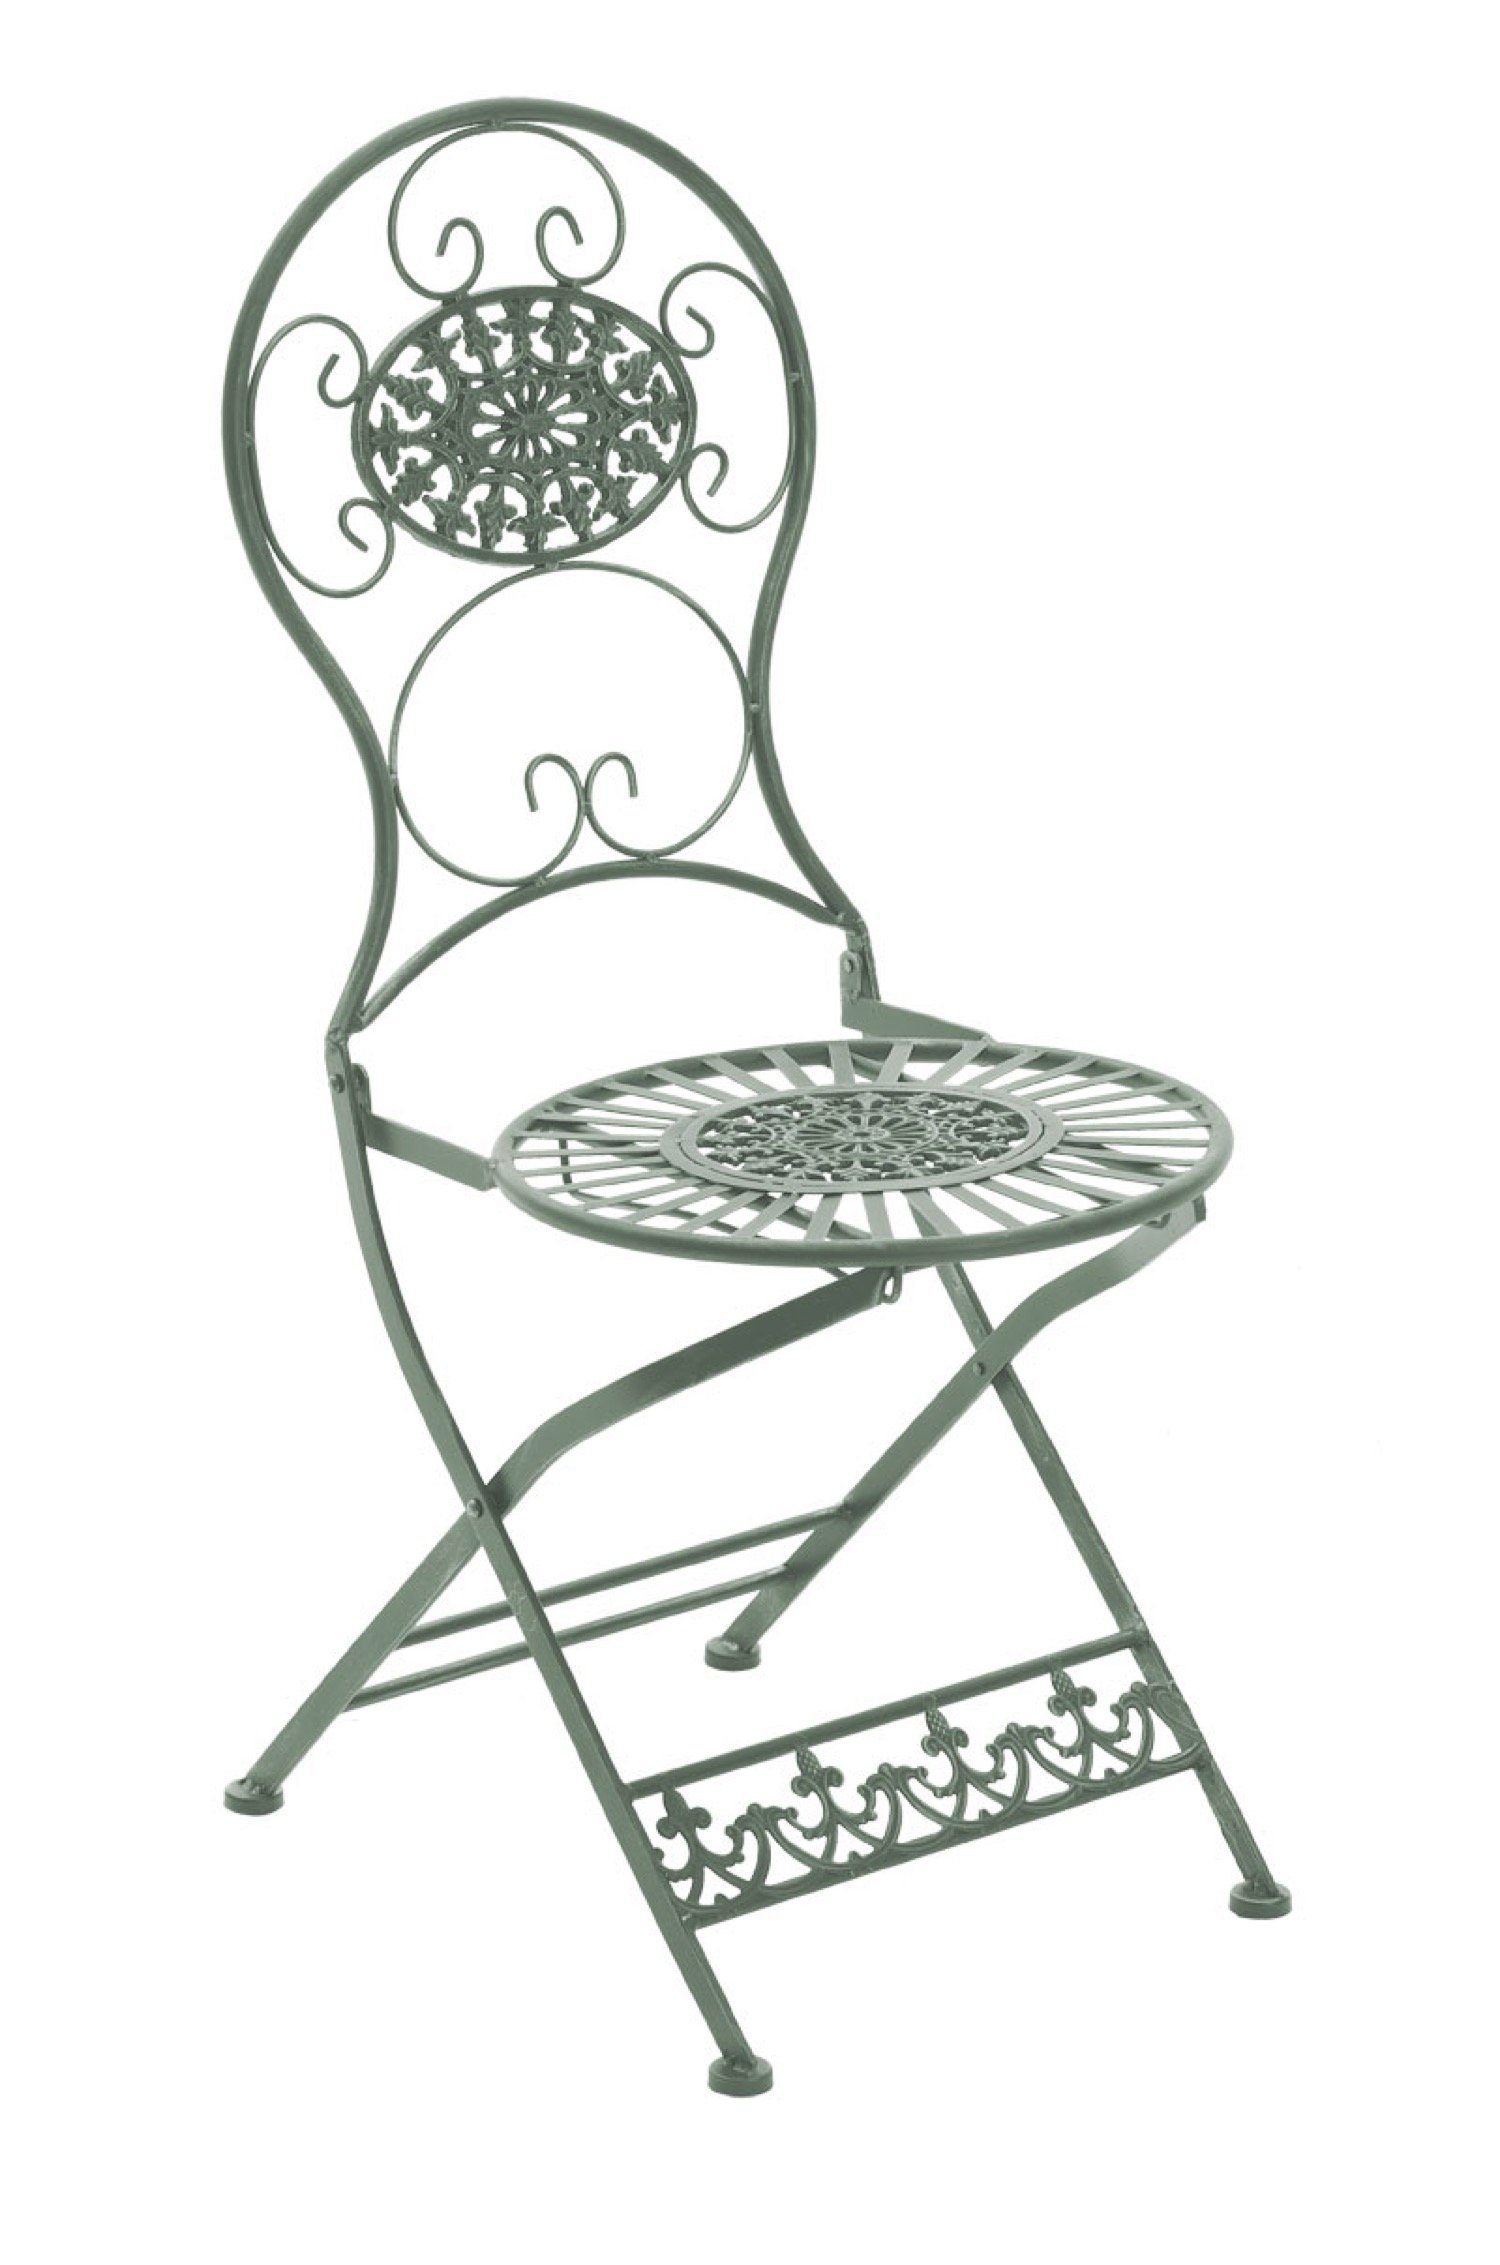 TPFGarden Gartenstuhl Moni - für Garten, Balkon, Terrasse - Farbe: antik-grün (Hochwertiger und stabiler Metallstuhl aus handgefertigtem Eisen, 1 St), Balkonstuhl, Klappstuhl - Maße (TxBxH): 50 x 43 x 91.5cm